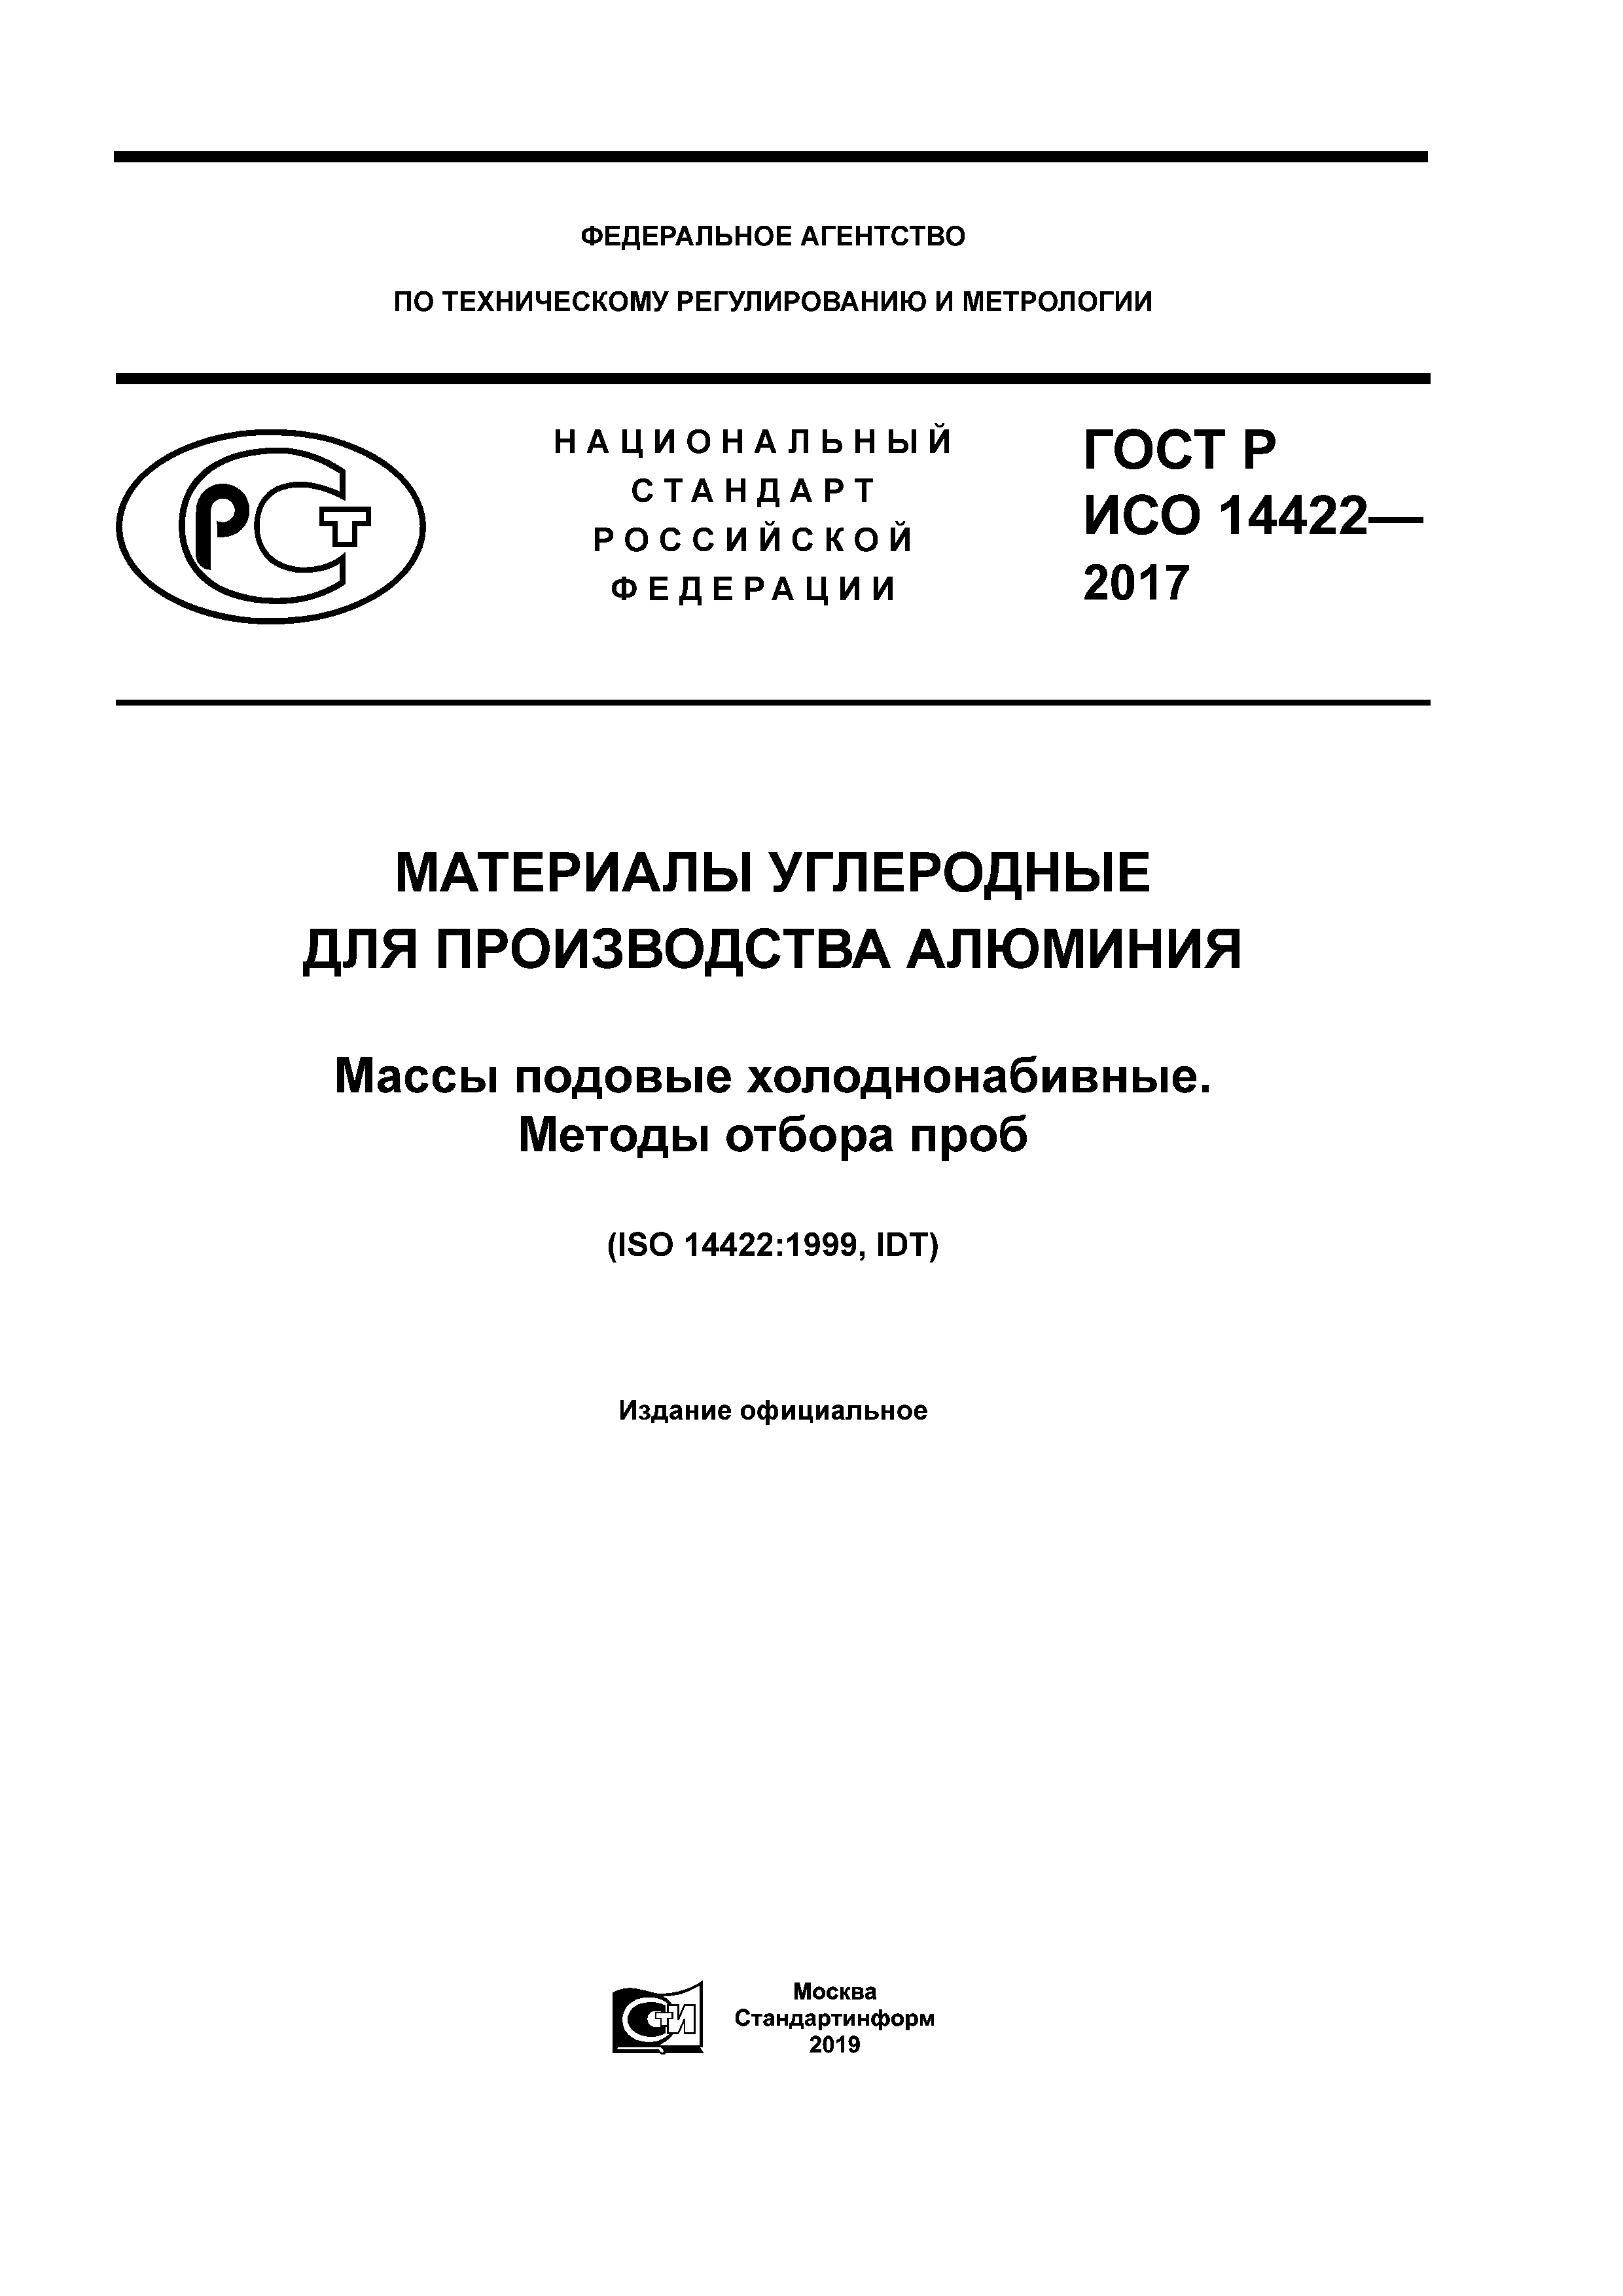 ГОСТ Р ИСО 14422-2017